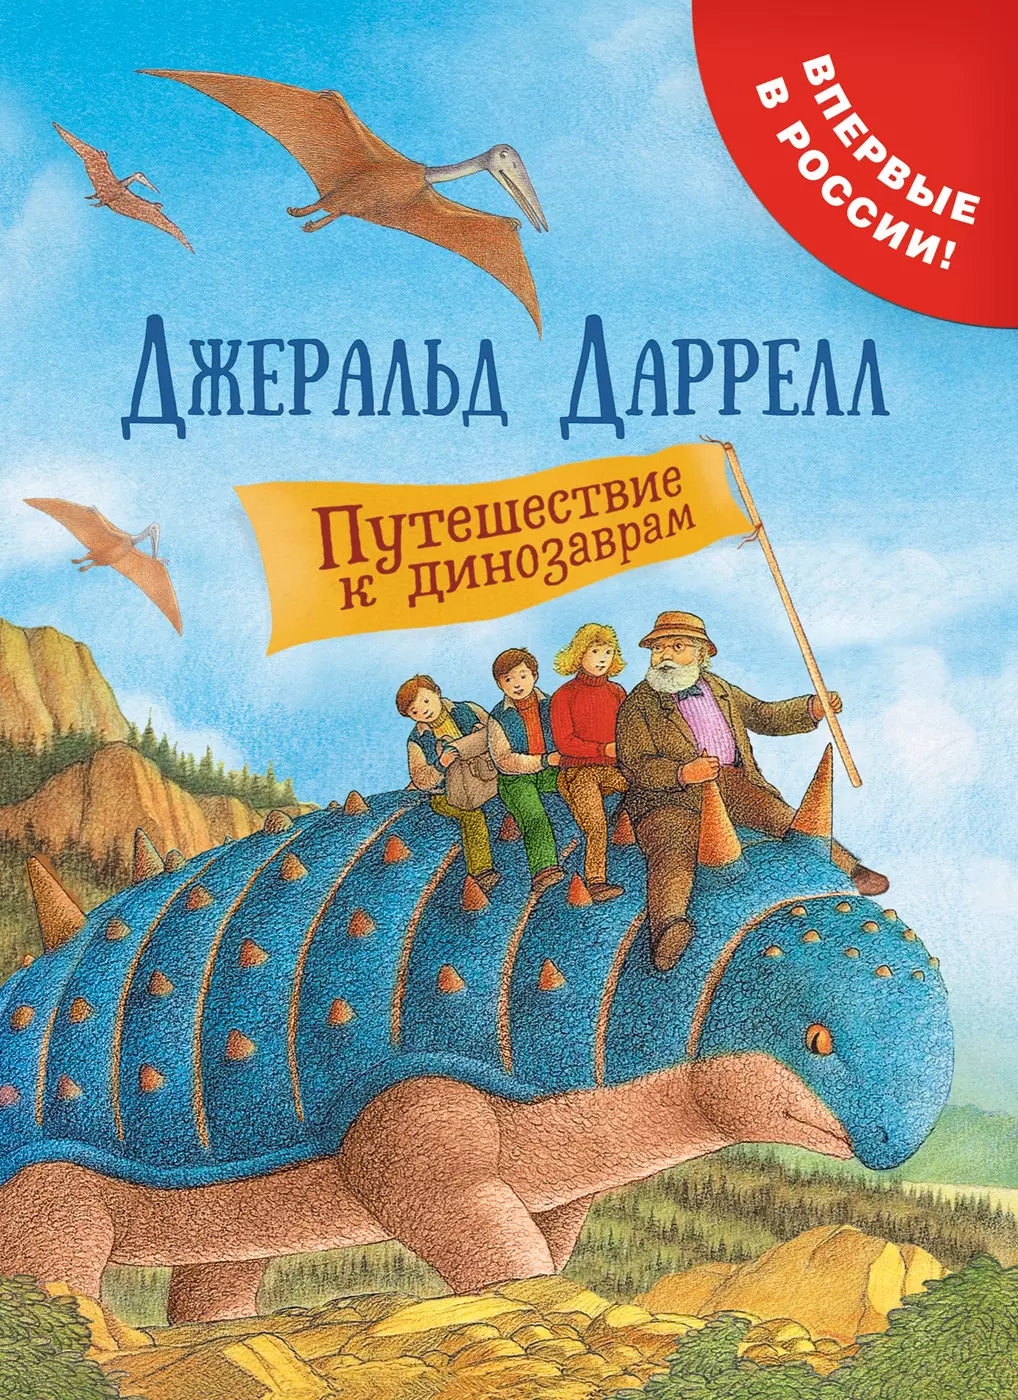 Книга Даррелл Дж. Путешествие к динозаврам. изд. Росмэн